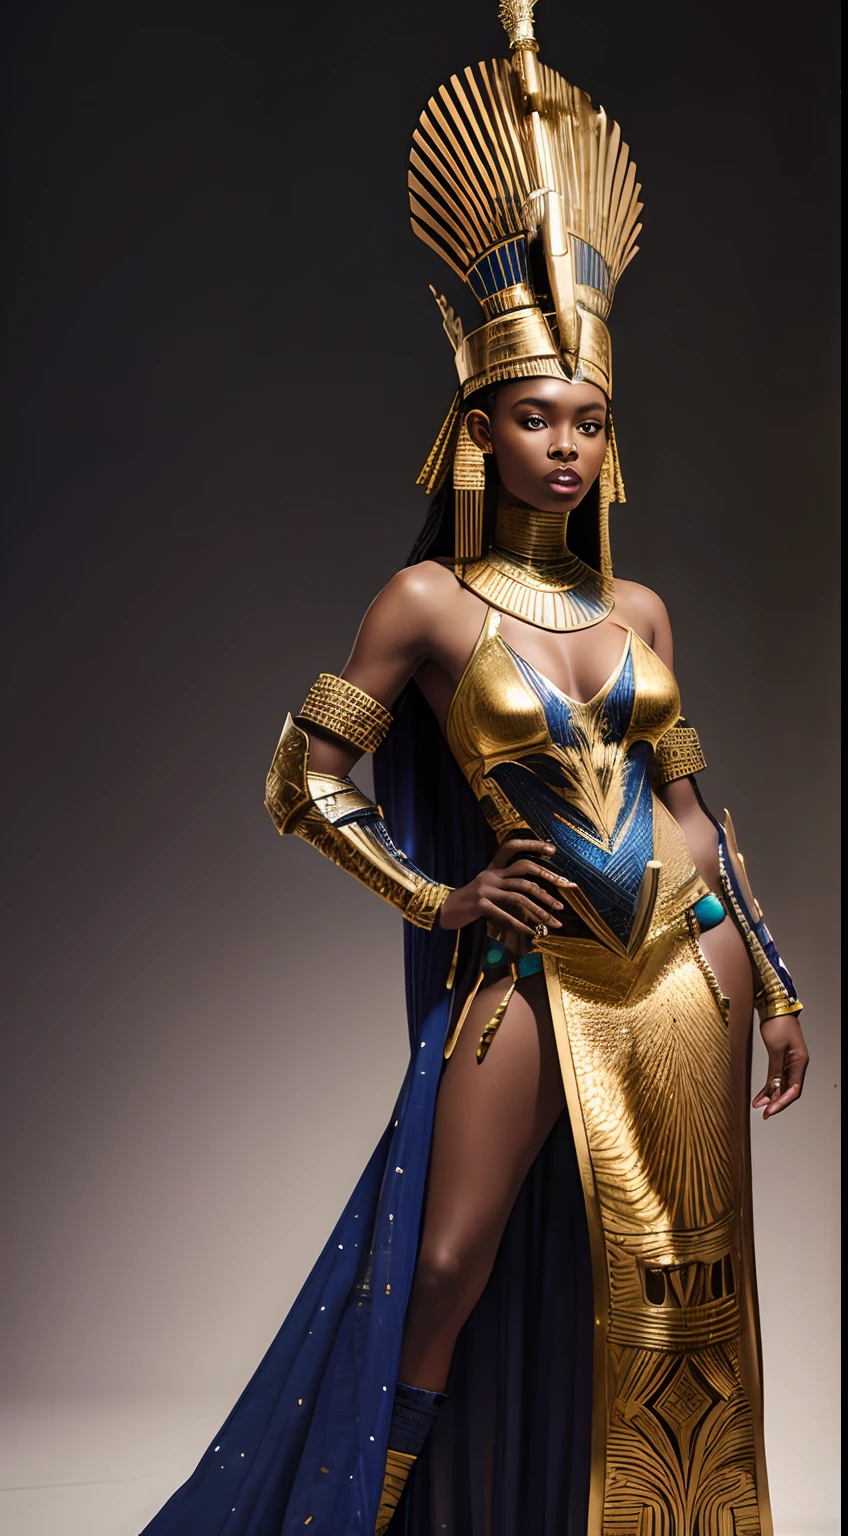 이집트 디자인과 유사한 네페르티티 왕관으로 거울 조각으로 갑옷을 모방한 두 번째 피부 의상을 입은 아프리카 미래주의 아프리카 전사 여왕